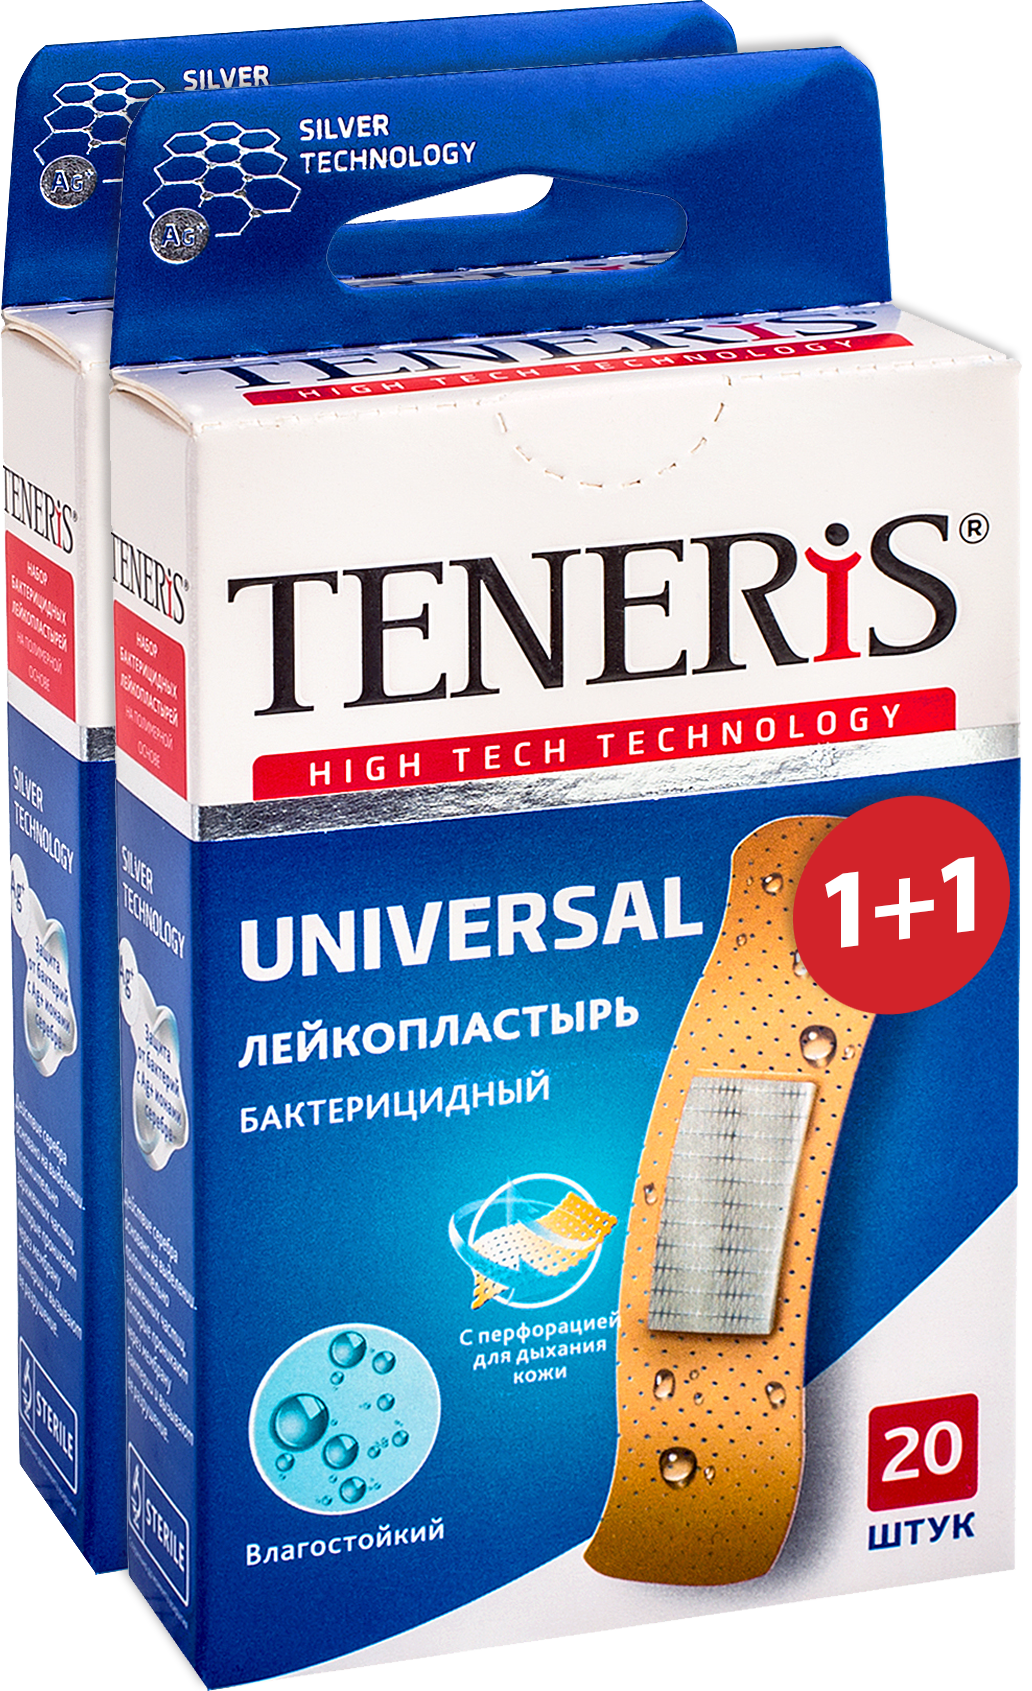 Купить TENERIS UNIVERSAL Лейкопластырь бактерицидный с ионами серебра на полимерной основе 20+20 шт., Пластыри TENERIS UNIVERSAL бактерицидные с ионами серебра 20+20 шт.